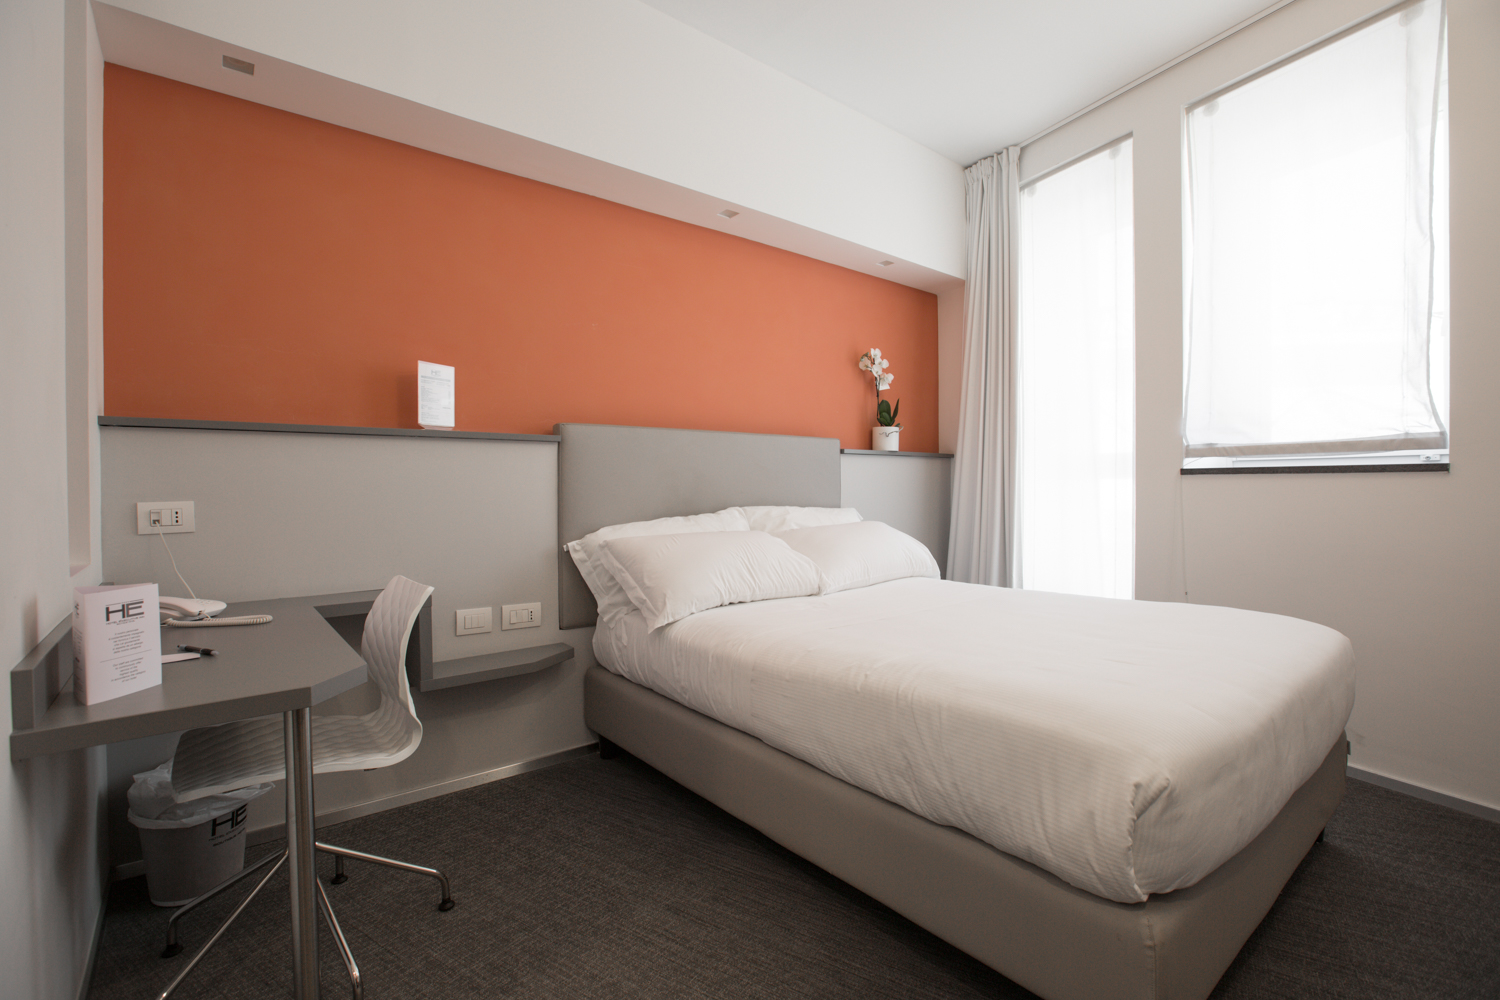 Hotel Executive Inn camera doppia Francese, vista generale di una camera con un letto francese